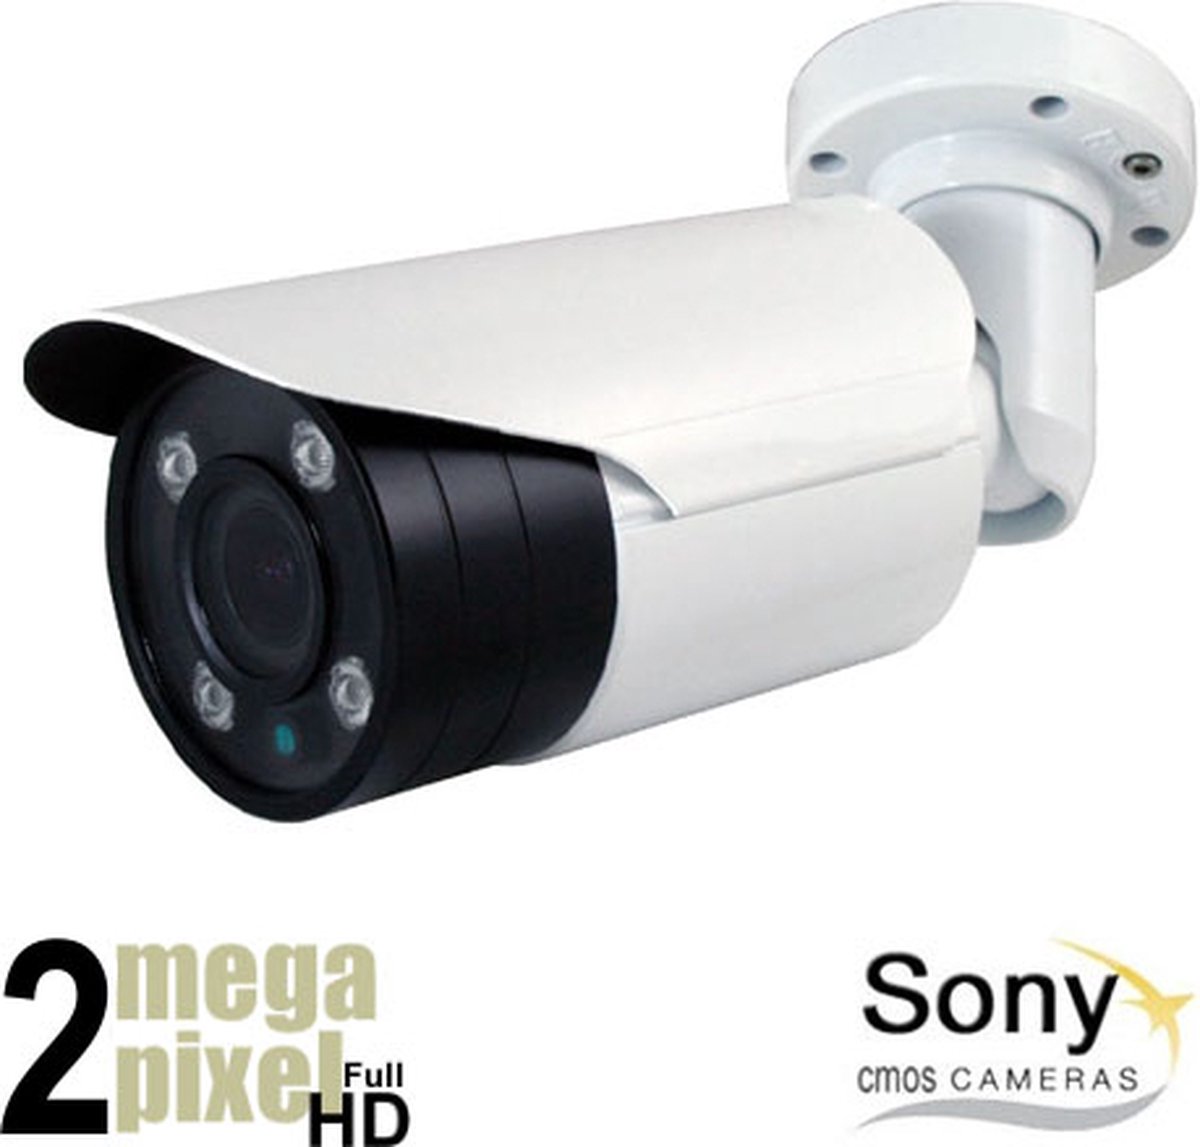 Beveiligingscamera - Full HD CVI Camera - 50m Nachtzicht - Motorzoom - 2.8-12mm Lens - Starlight - Bewakingscamera - Bullet - Binnen en Buiten Camera